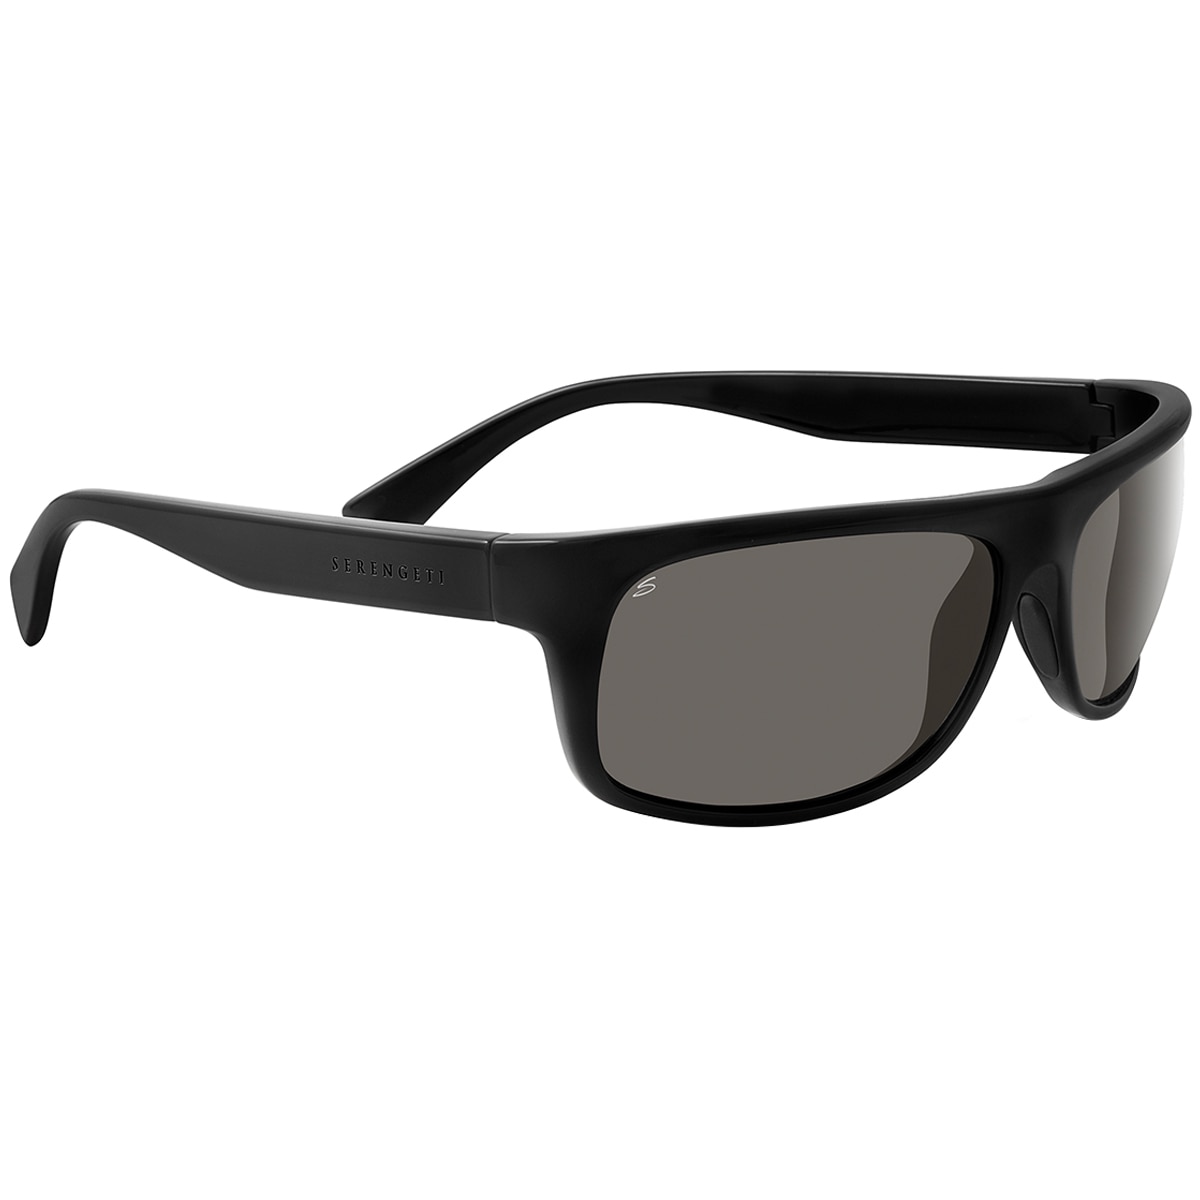 Serengeti Sunglasses 8180 Misano Black Poloraised